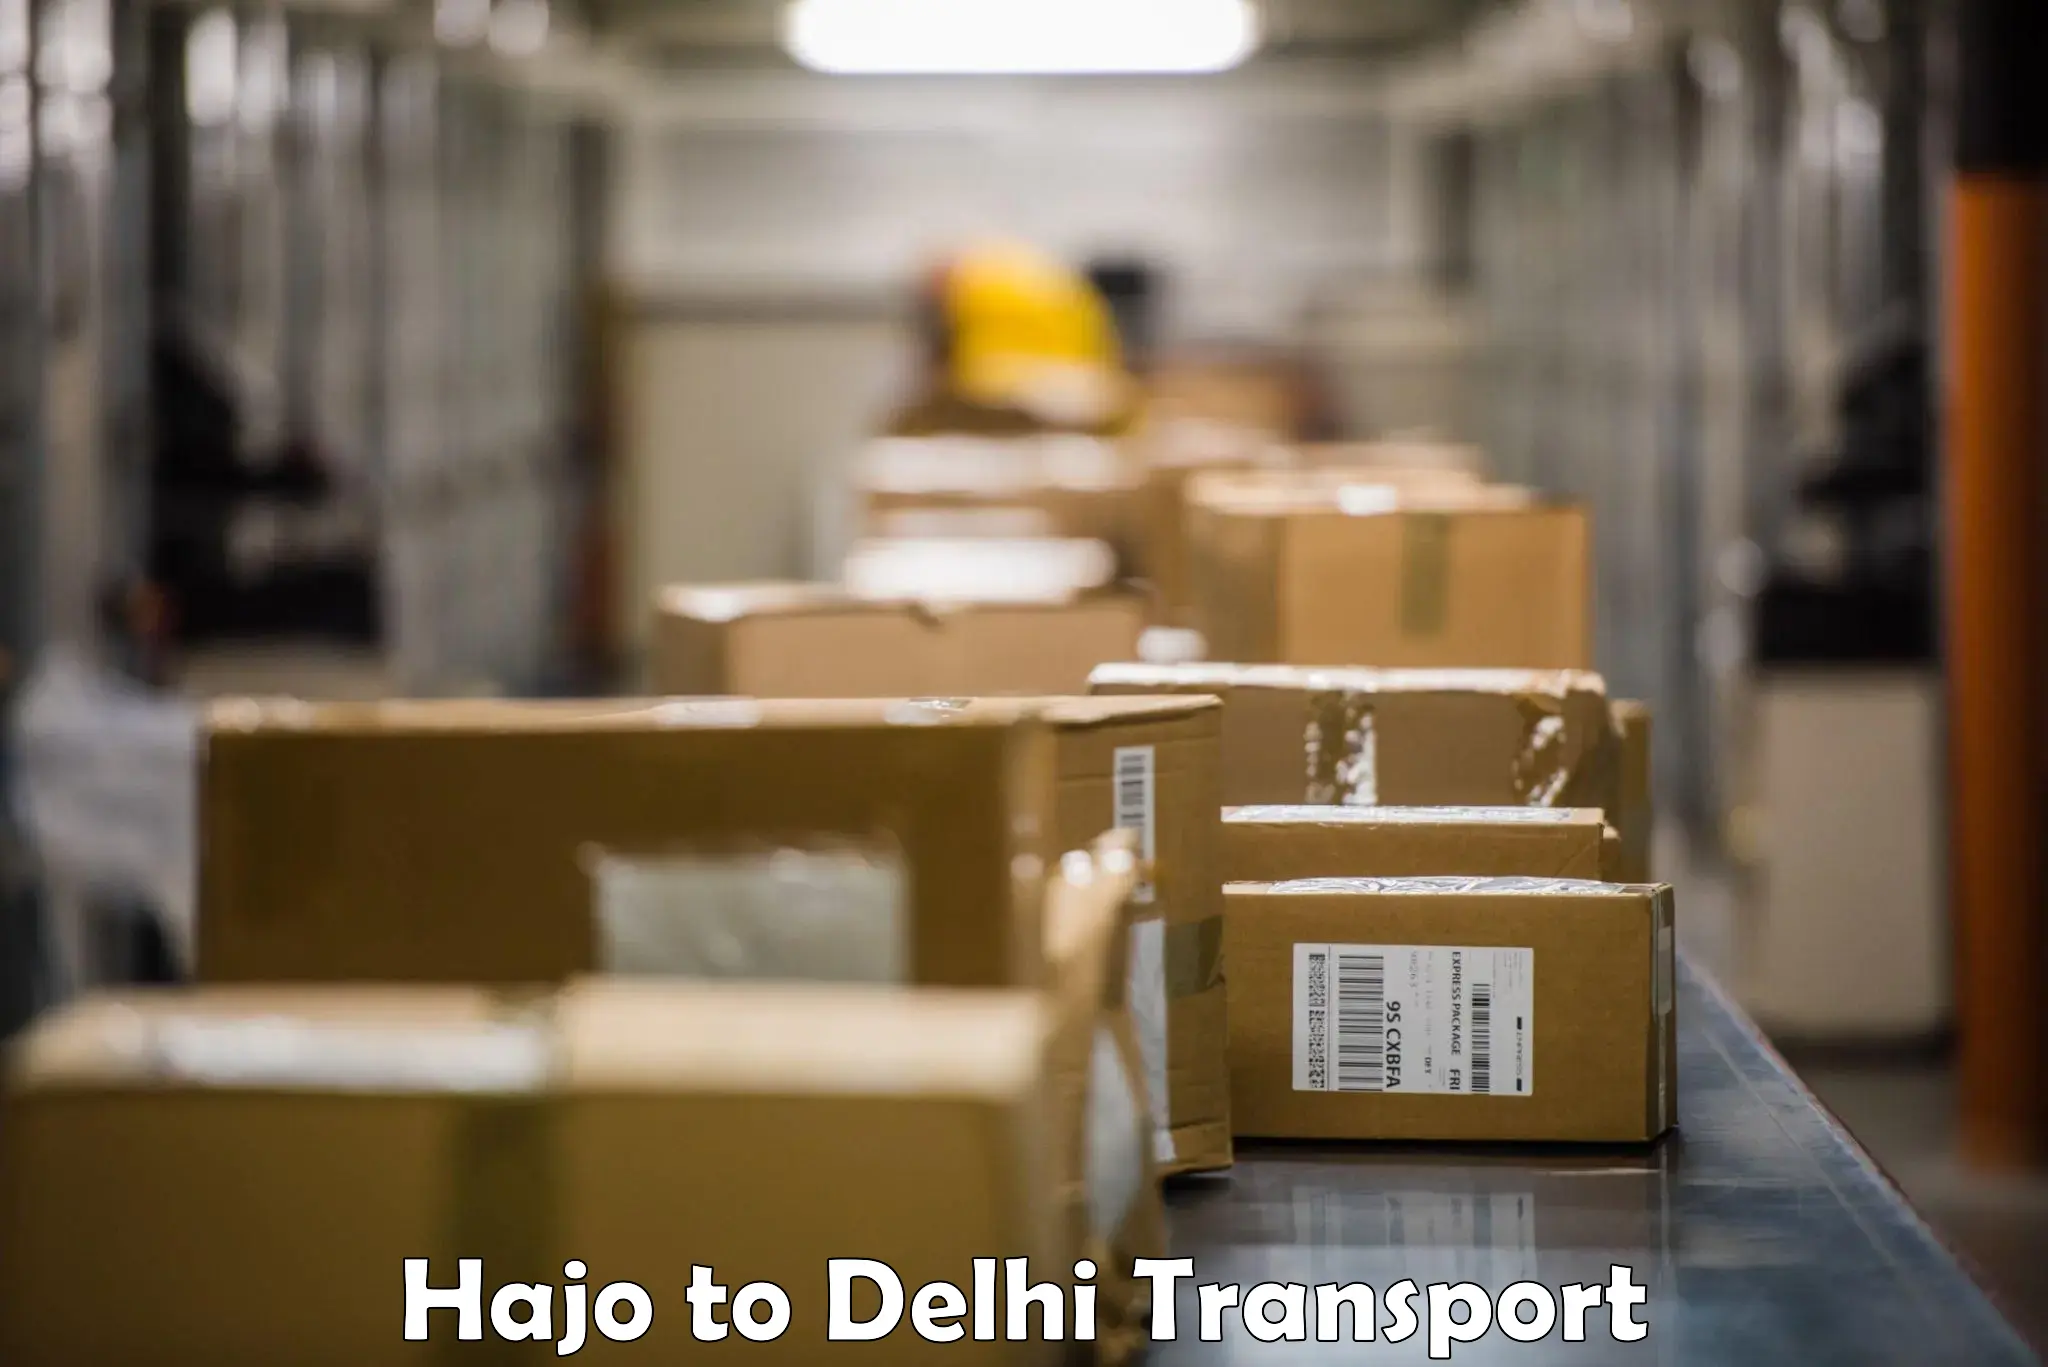 All India transport service Hajo to University of Delhi